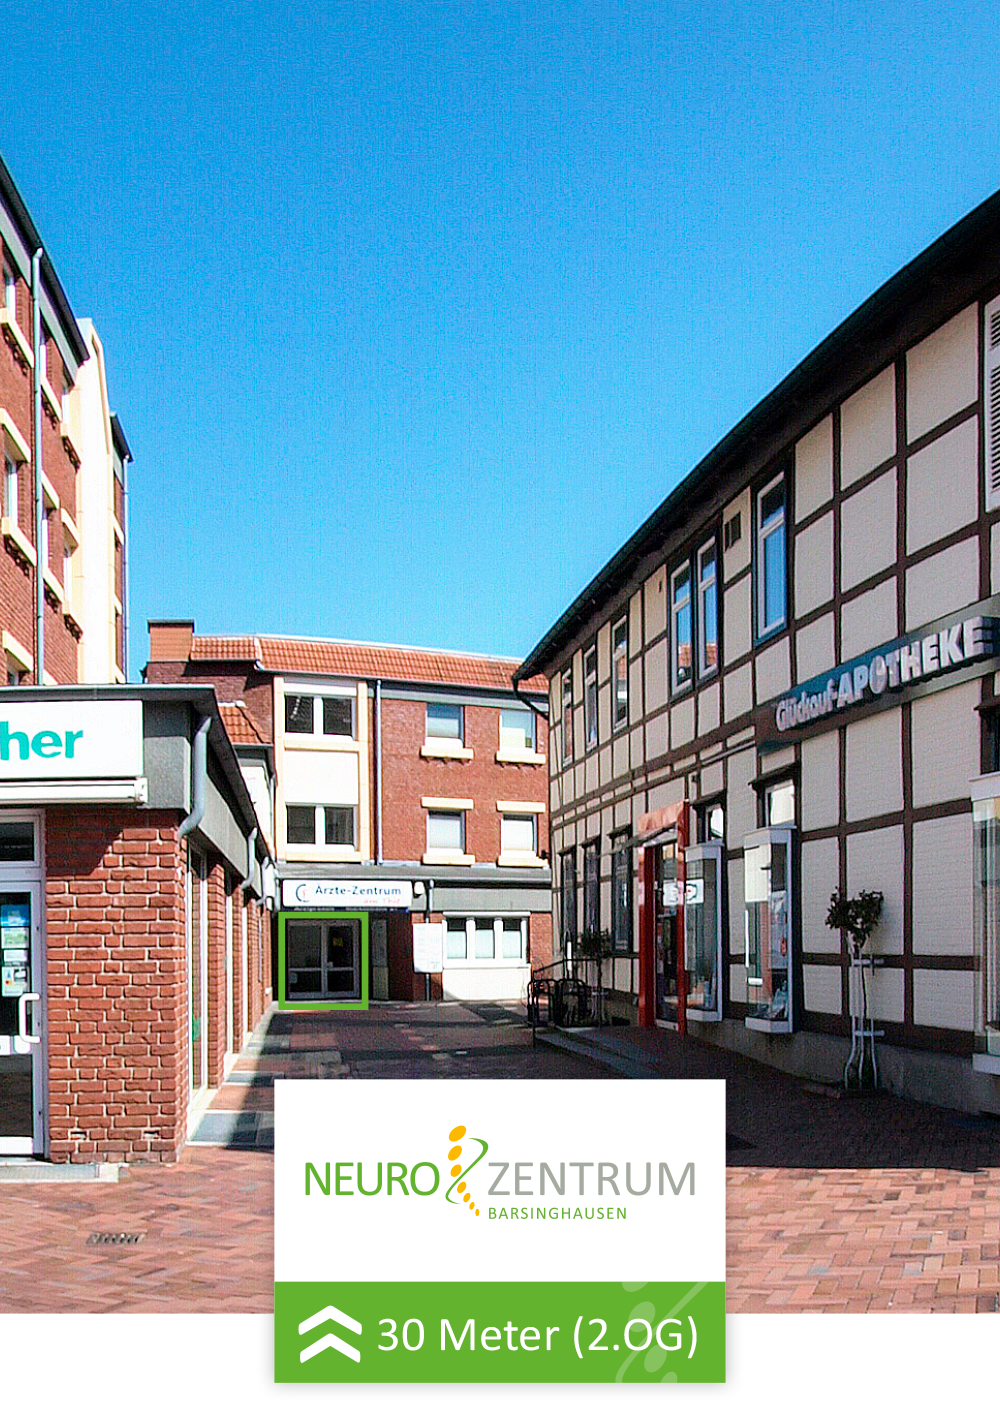 Ärztehaus am Thie Barsinghausen Neurozentrum Neurologe